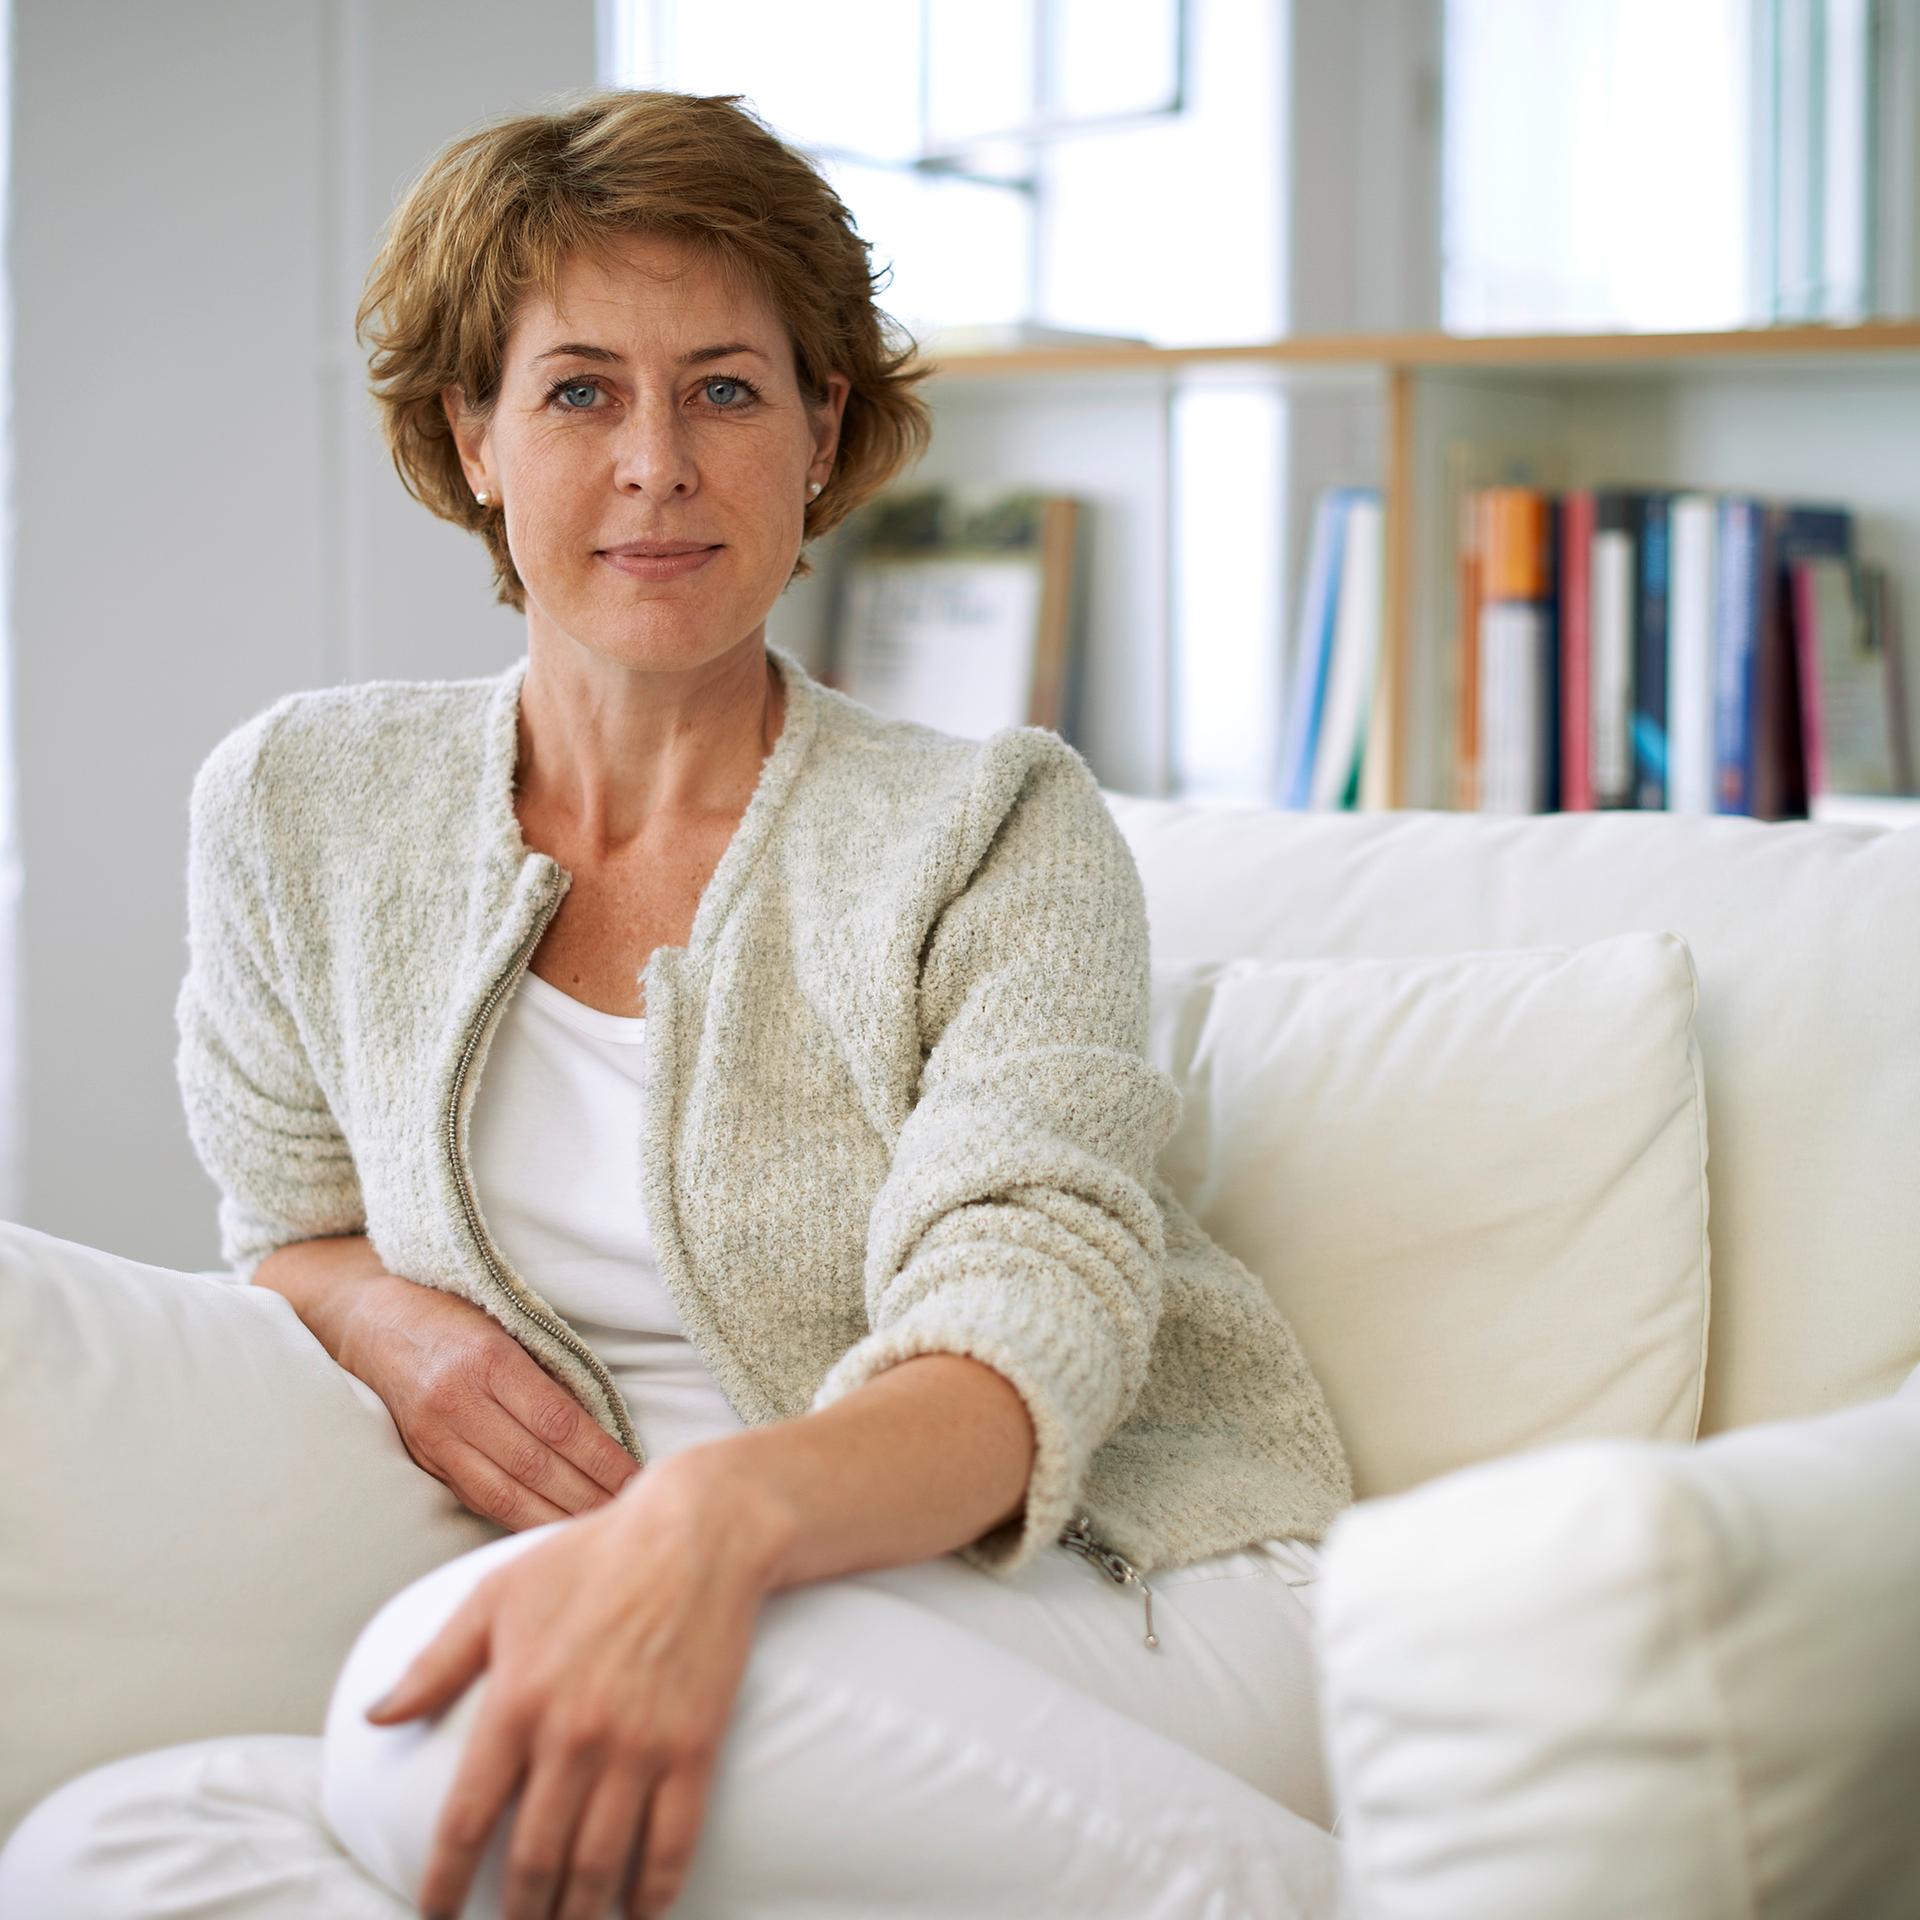 Therapeutin und Autorin – Angélique Mundt: „Ich habe drei Leben“